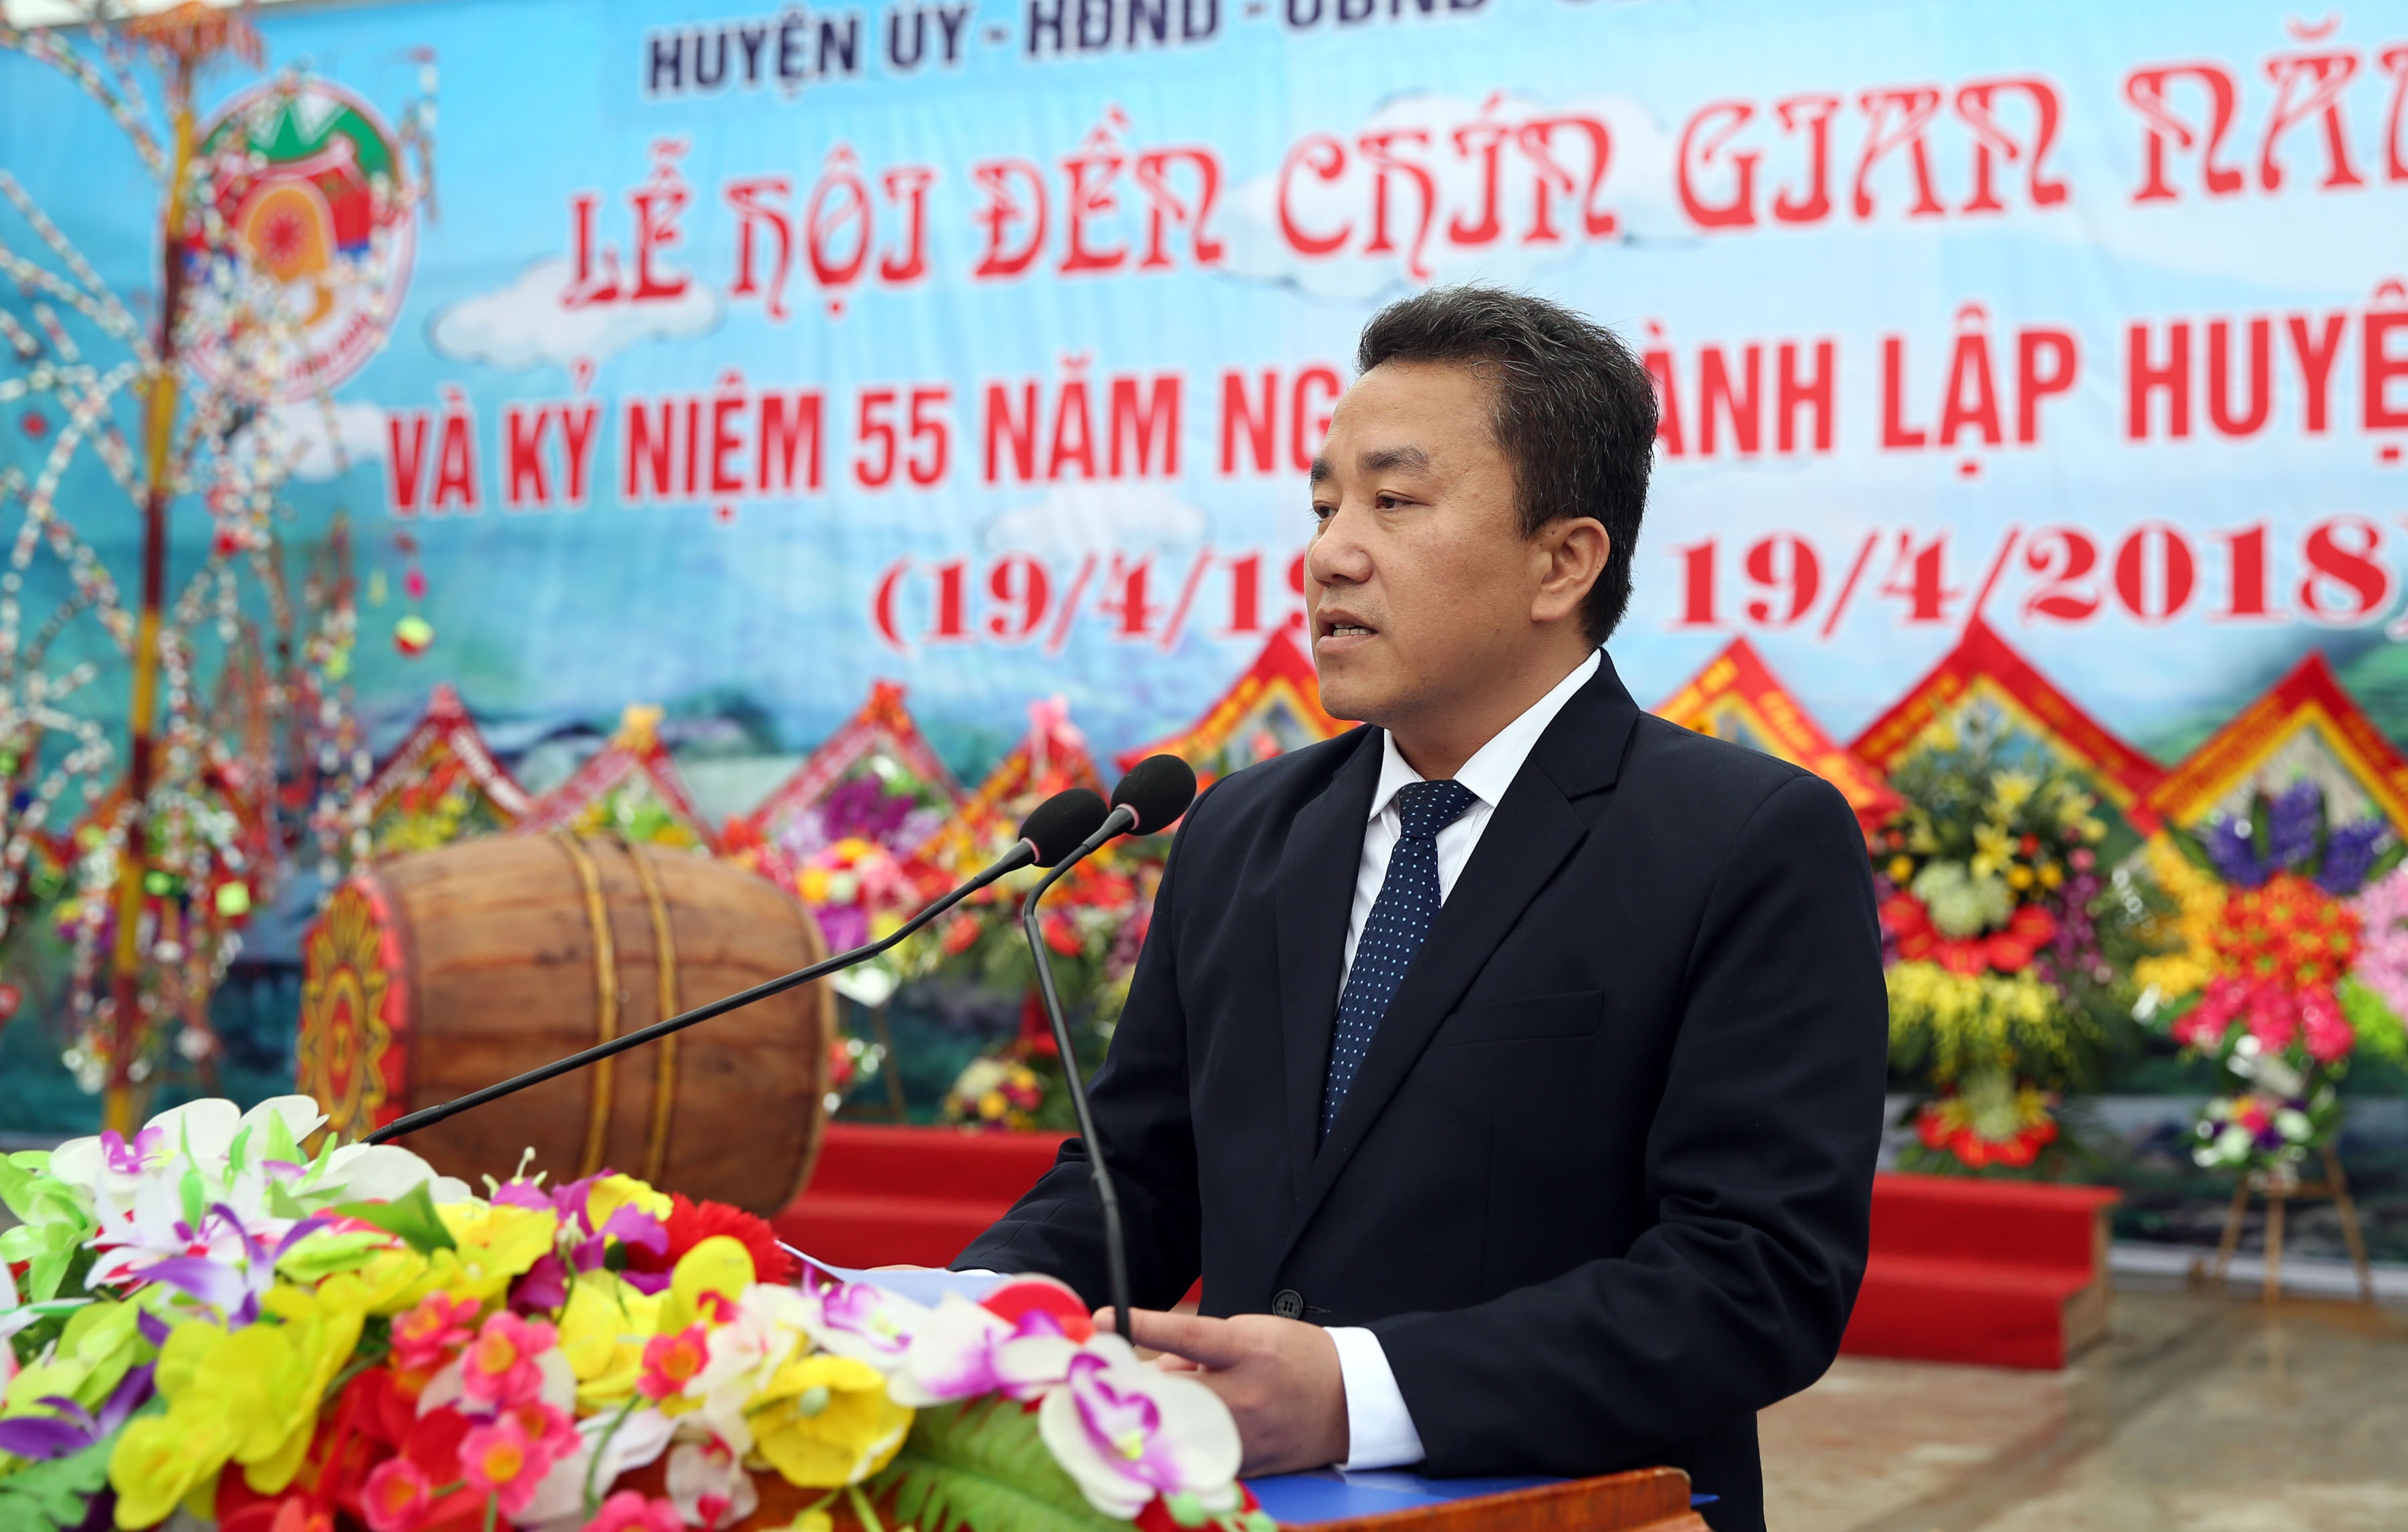 Ông Lê Văn Giáp, Chủ tịch UBND huyện Quế Phong khái quát về tình hình kinh tế xã hội của địa phương trong 55 năm qua. Ảnh : Hồ Phương